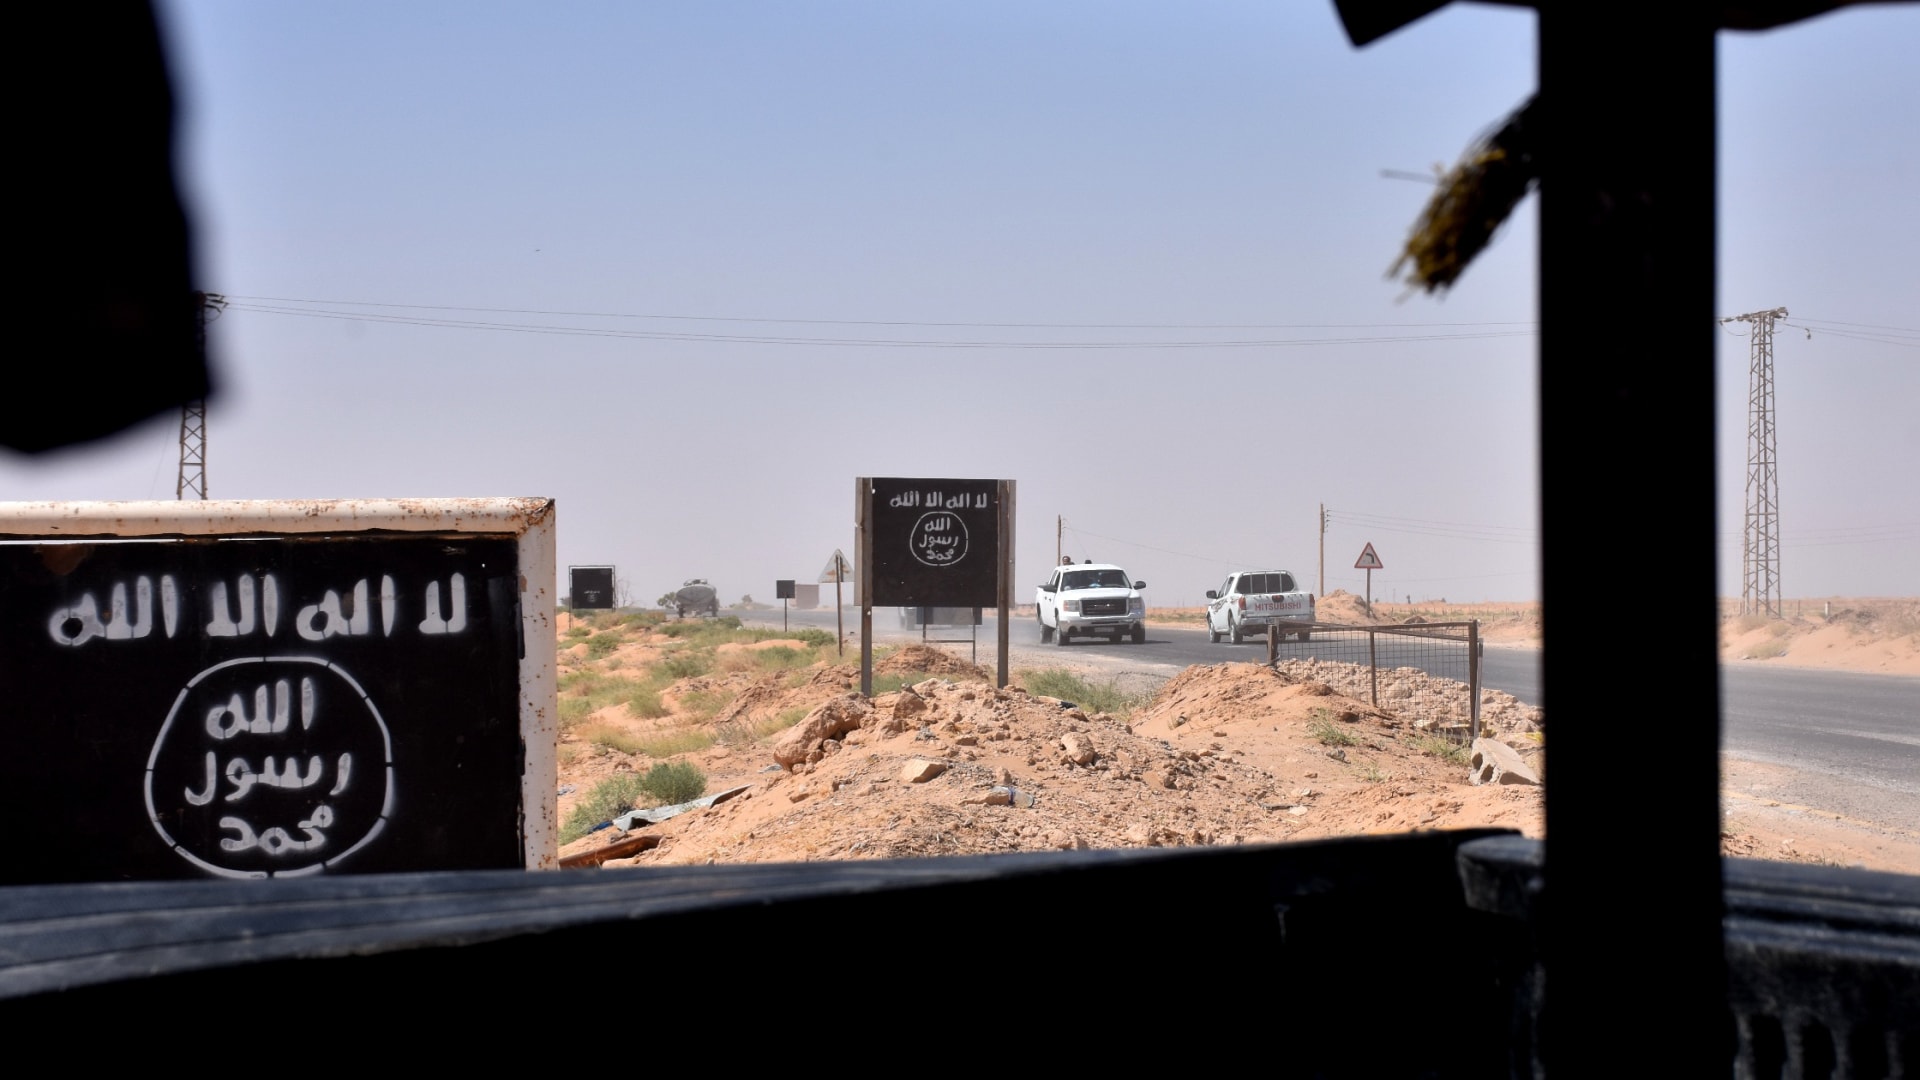 لوحات عليها شعار تنظيم داعش بالقرب من قرية المليحة بريف دير الزور بسوريا (صورة أرشيفية)